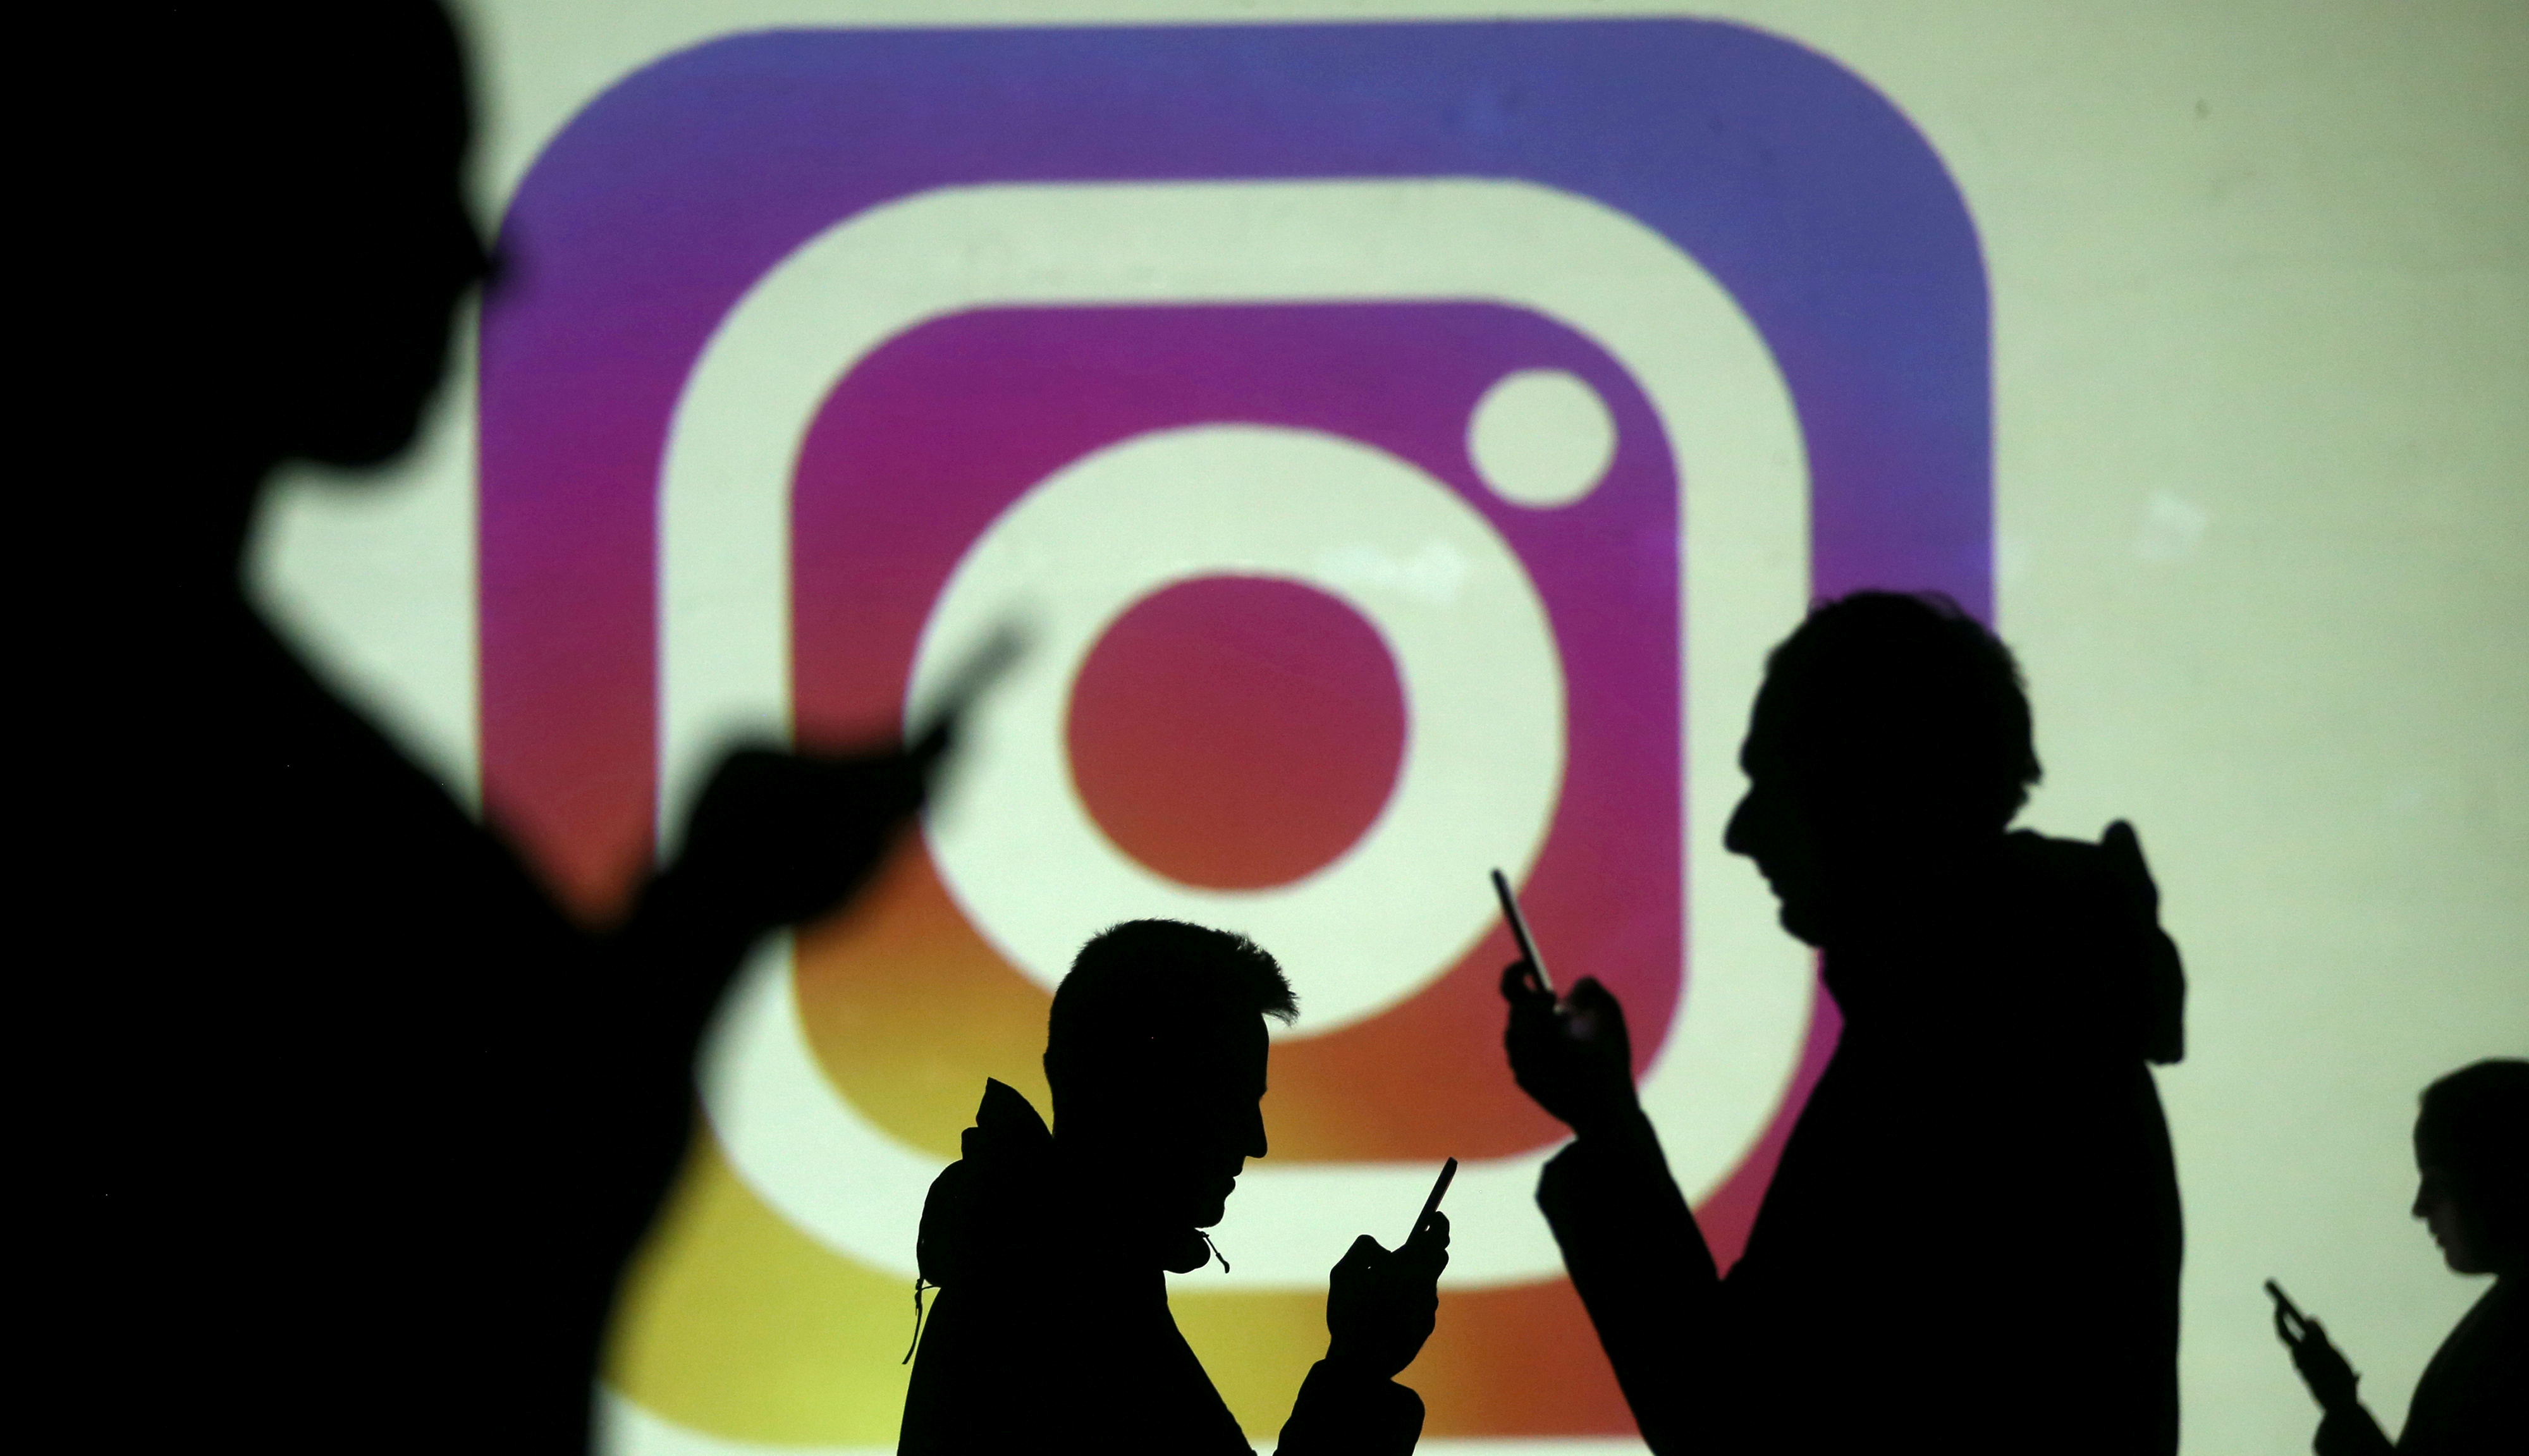 Entre julio y septiembre del año pasado, Instagram interceptó 6,5 millones de publicaciones con mensajes de odio (REUTERS/Dado Ruvic/Illustration/File Photo)